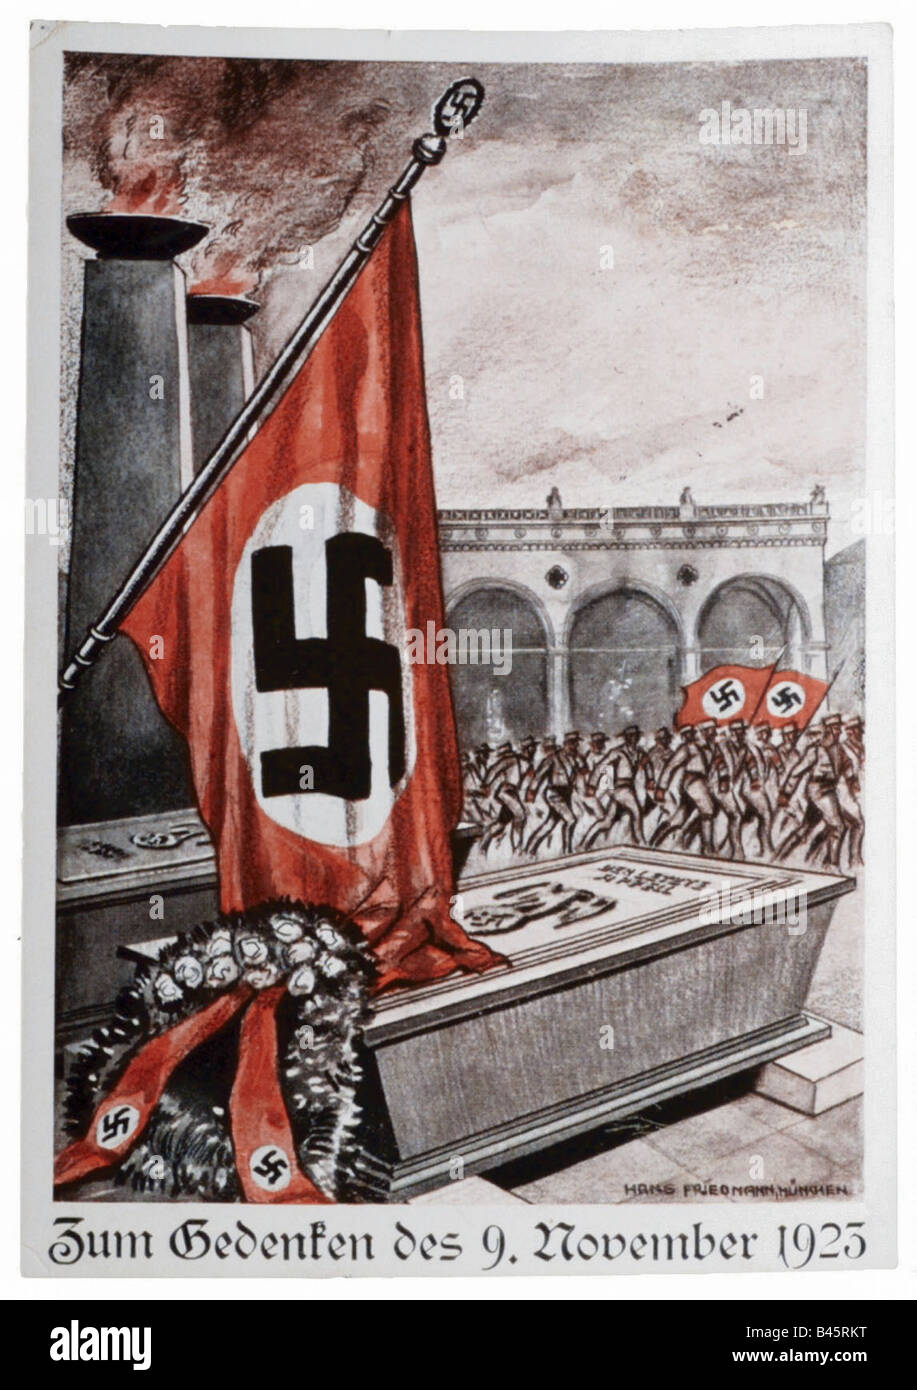 Nazismo/nazionalsocialismo, propaganda, rimeberanza alla Beer Hall Putsch 9.11.1923, disegno Di Friedmann, Monaco 1930s, 30s, Germania nazista, Terzo Reich, Foto Stock